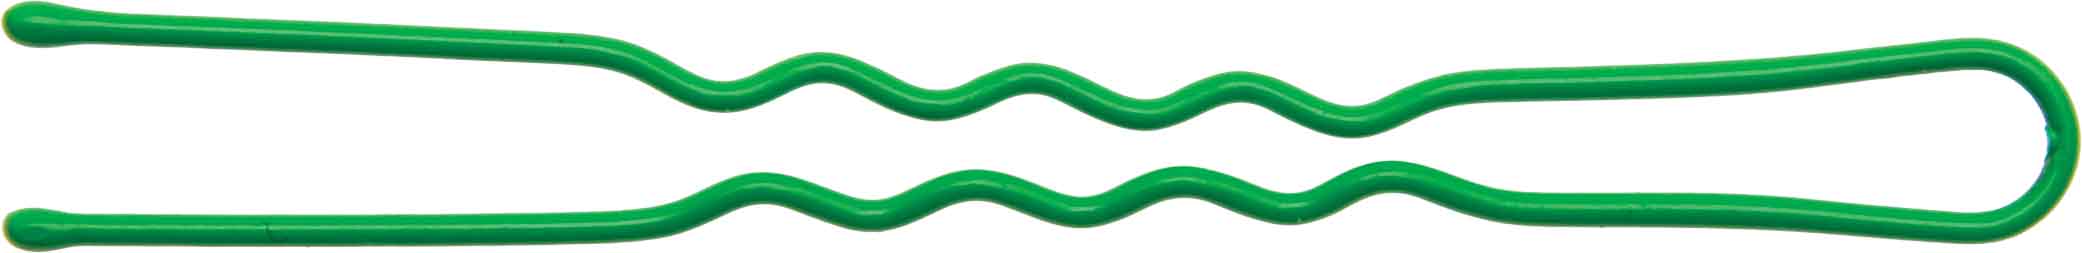 DEWAL BEAUTY Шпильки зеленые, волна 60 мм, 24 шт/уп